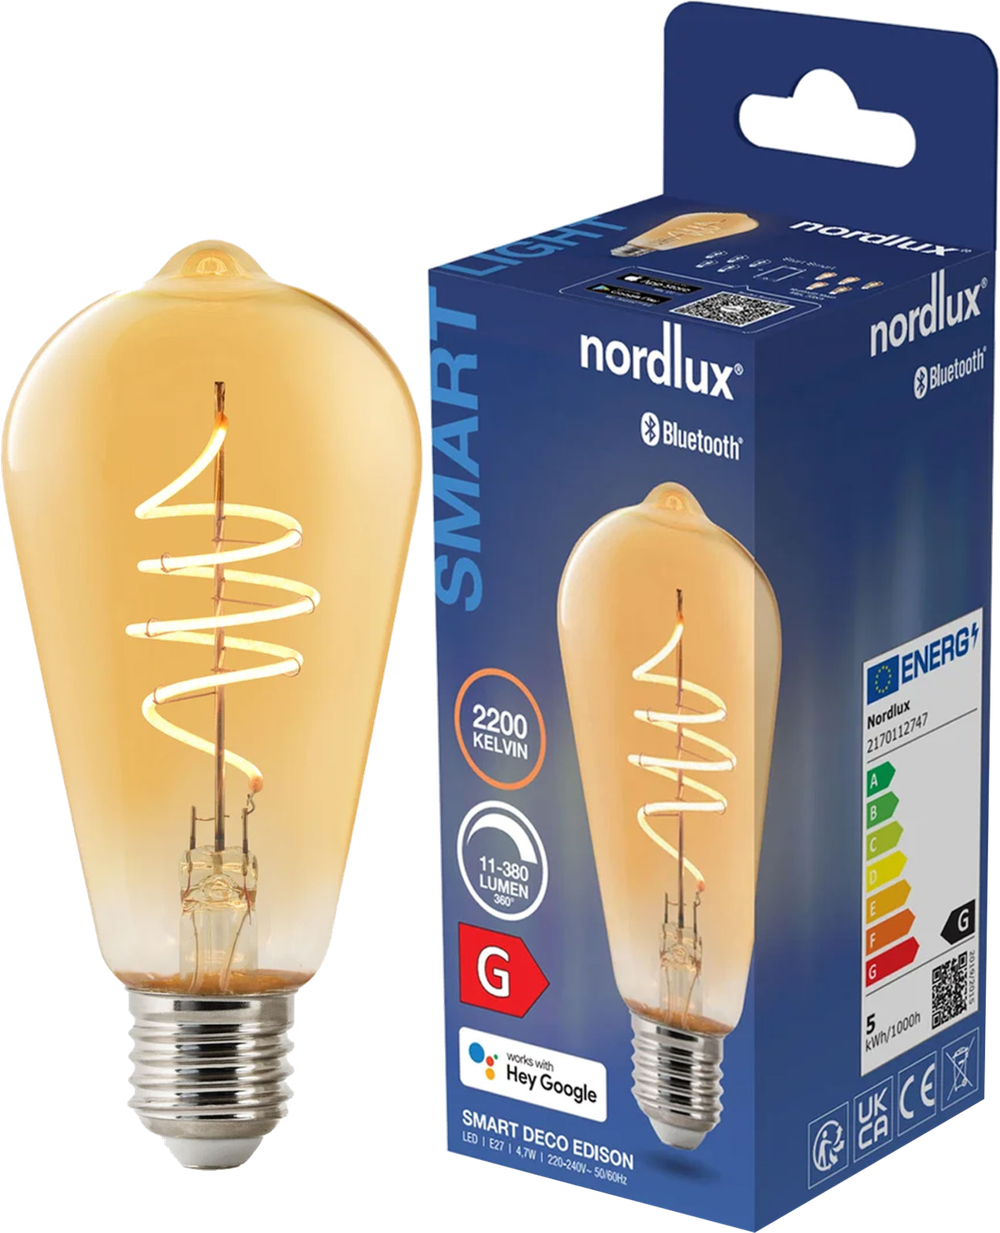 Tilbud på Nordlux Smart Spiral LED pære fra Davidsen til 81 kr.